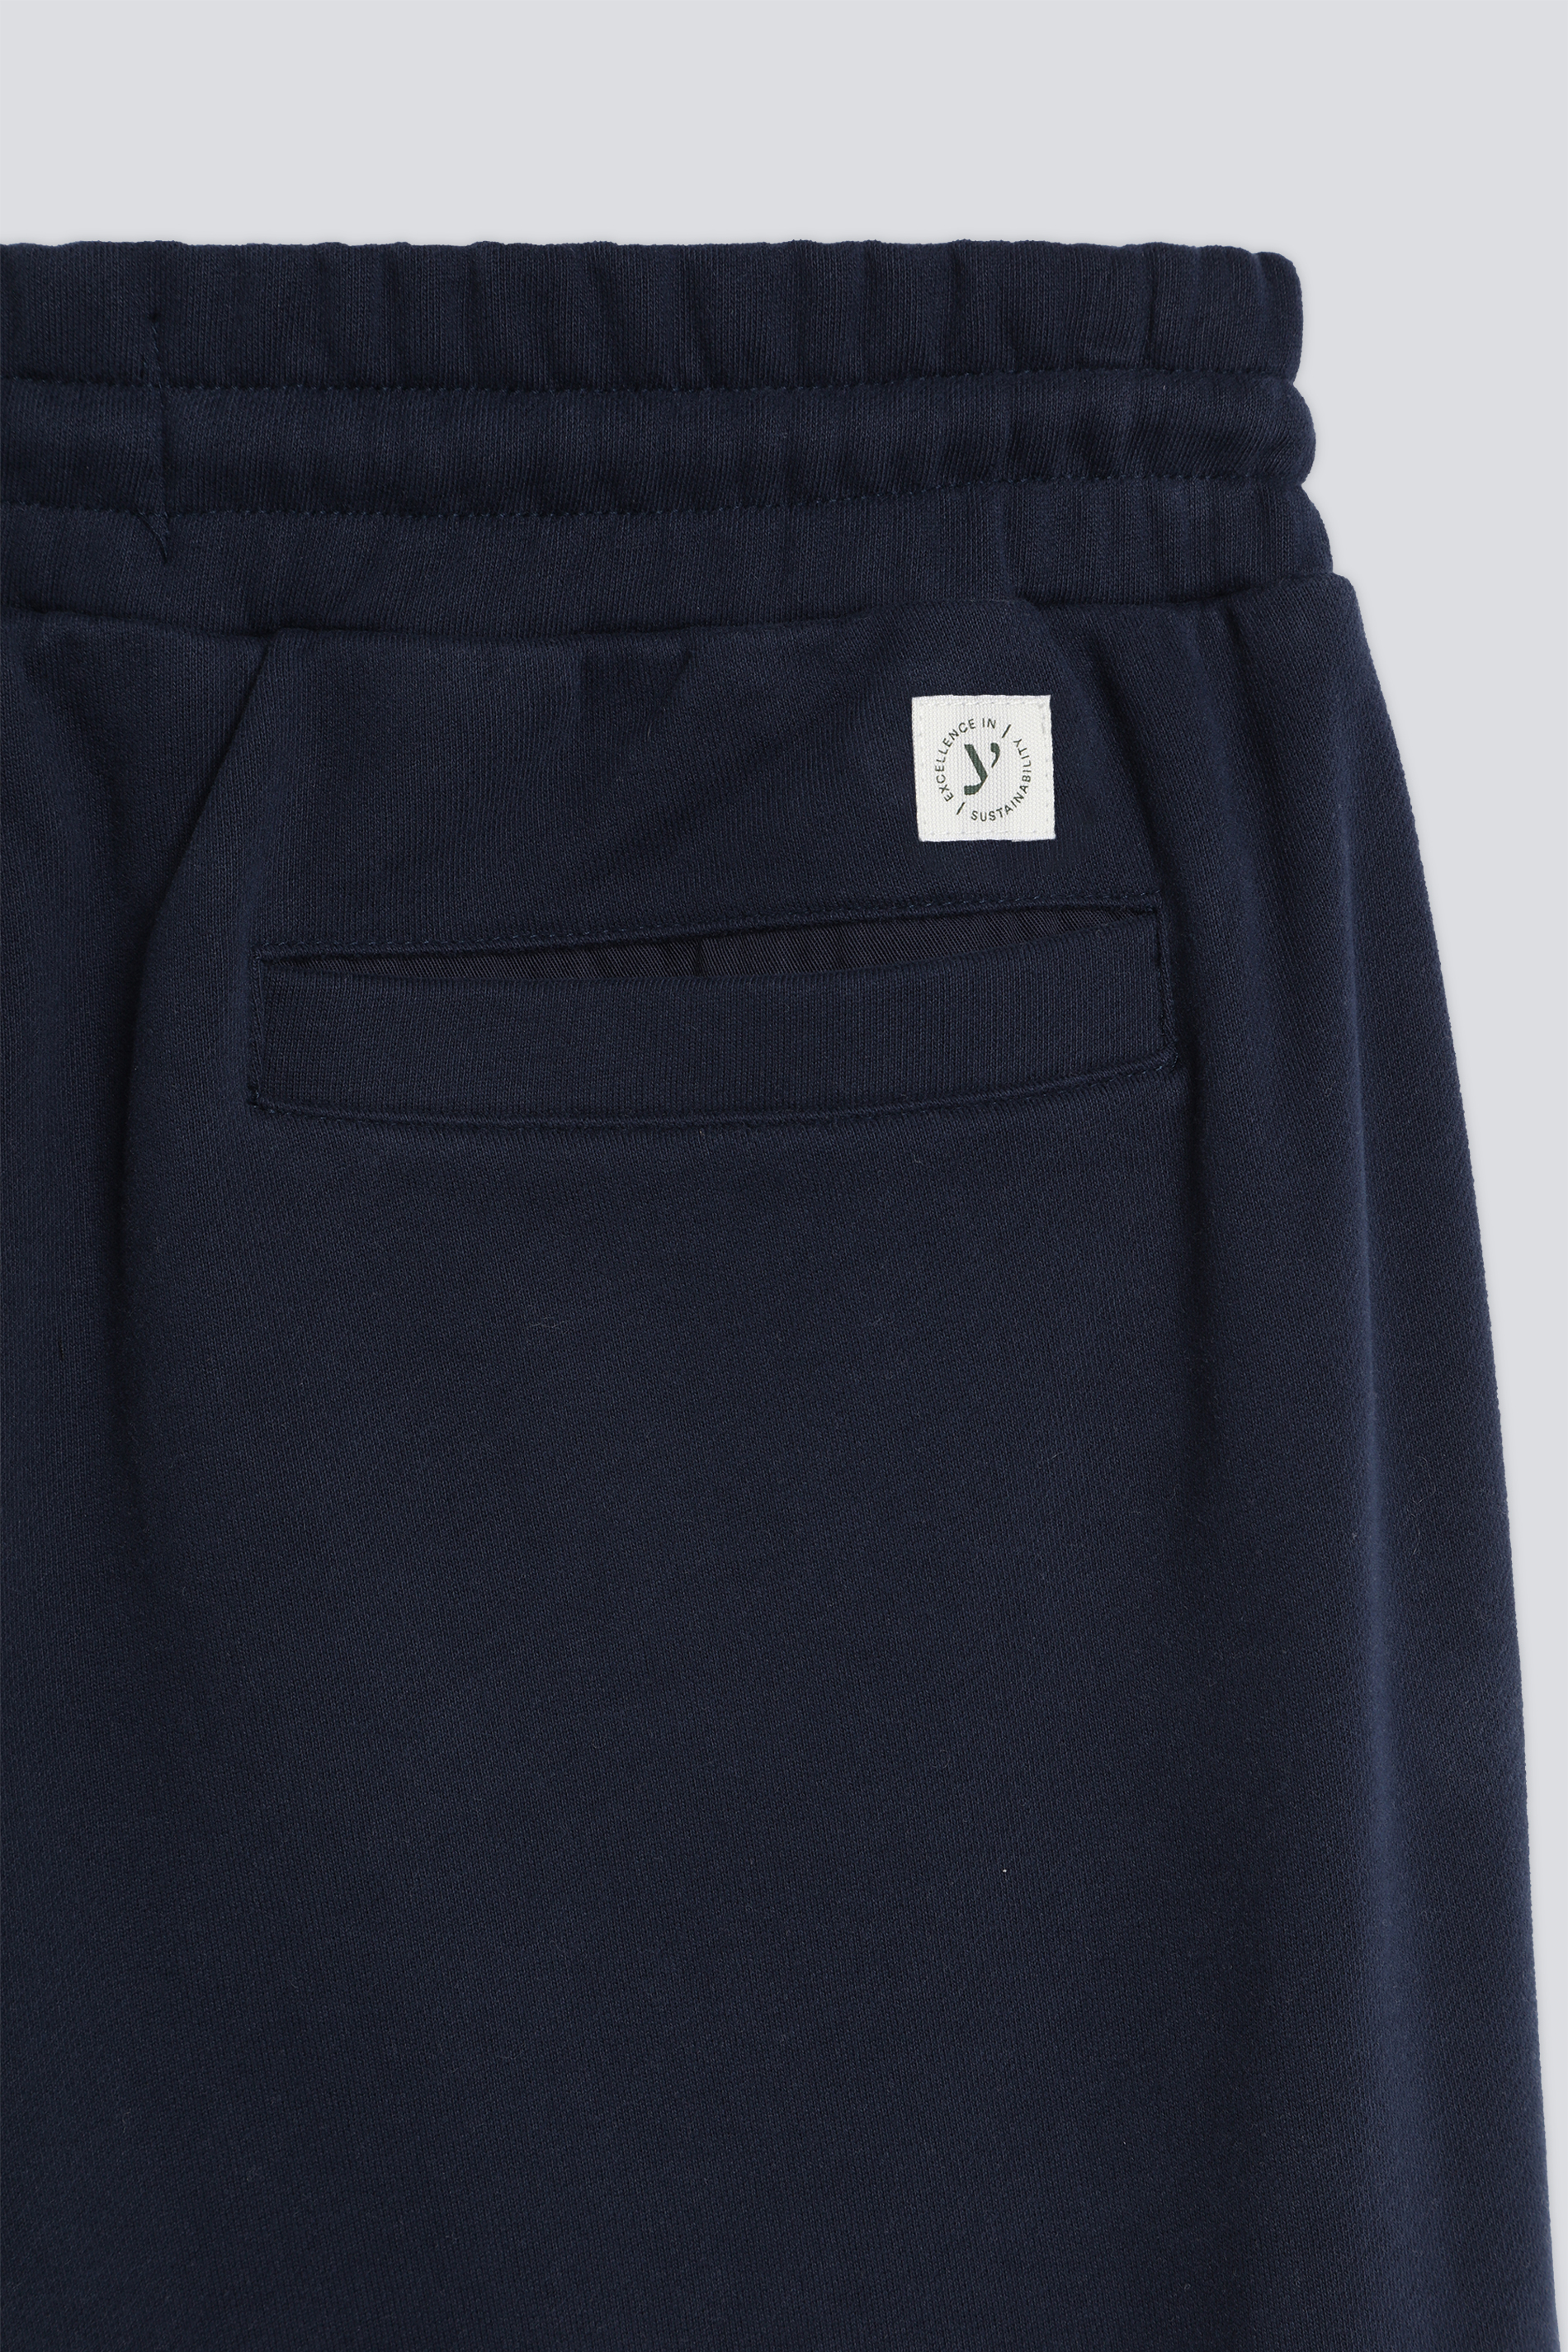 Sweat pants Serie Felpa Cotone Detail View 01 | mey®